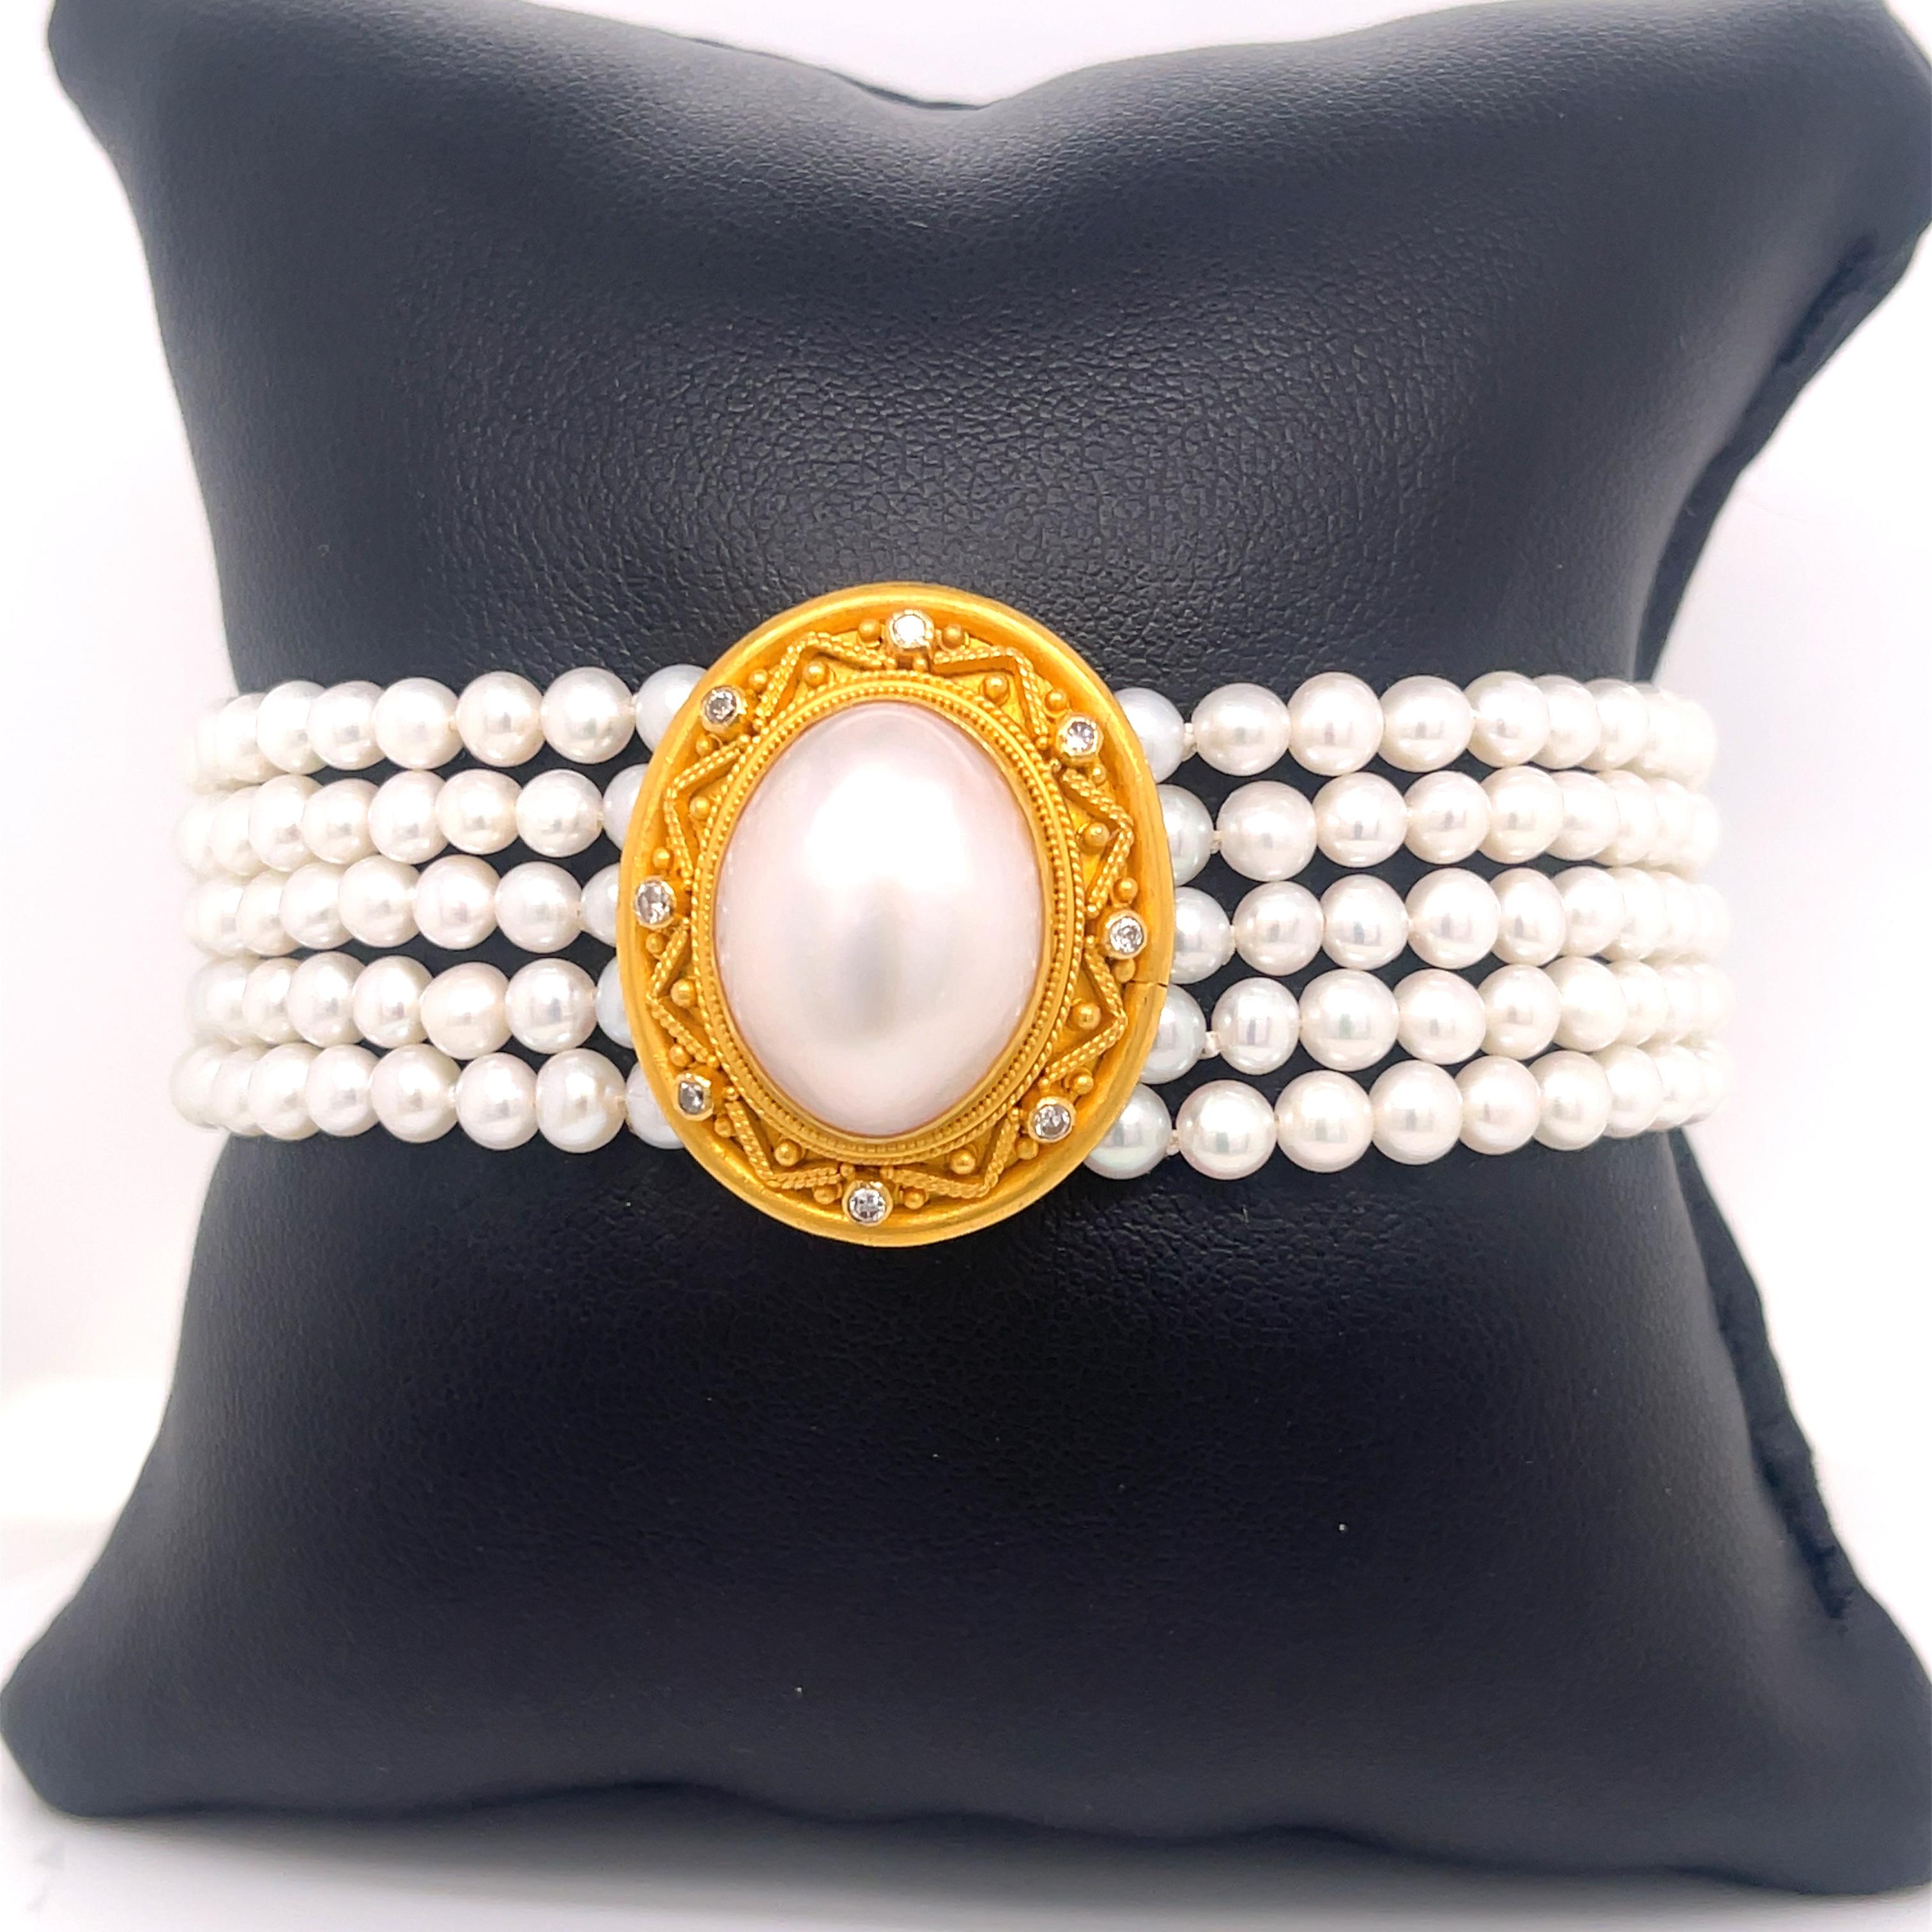 Bracelet Carolyn Tyler en perles et diamants en or 22K. Le bracelet comporte cinq rangs de perles de chaque côté, avec au centre une perle ovale mabe encadrée par huit diamants. Estampillé 22k C TYLER INDONESIA 2909. 